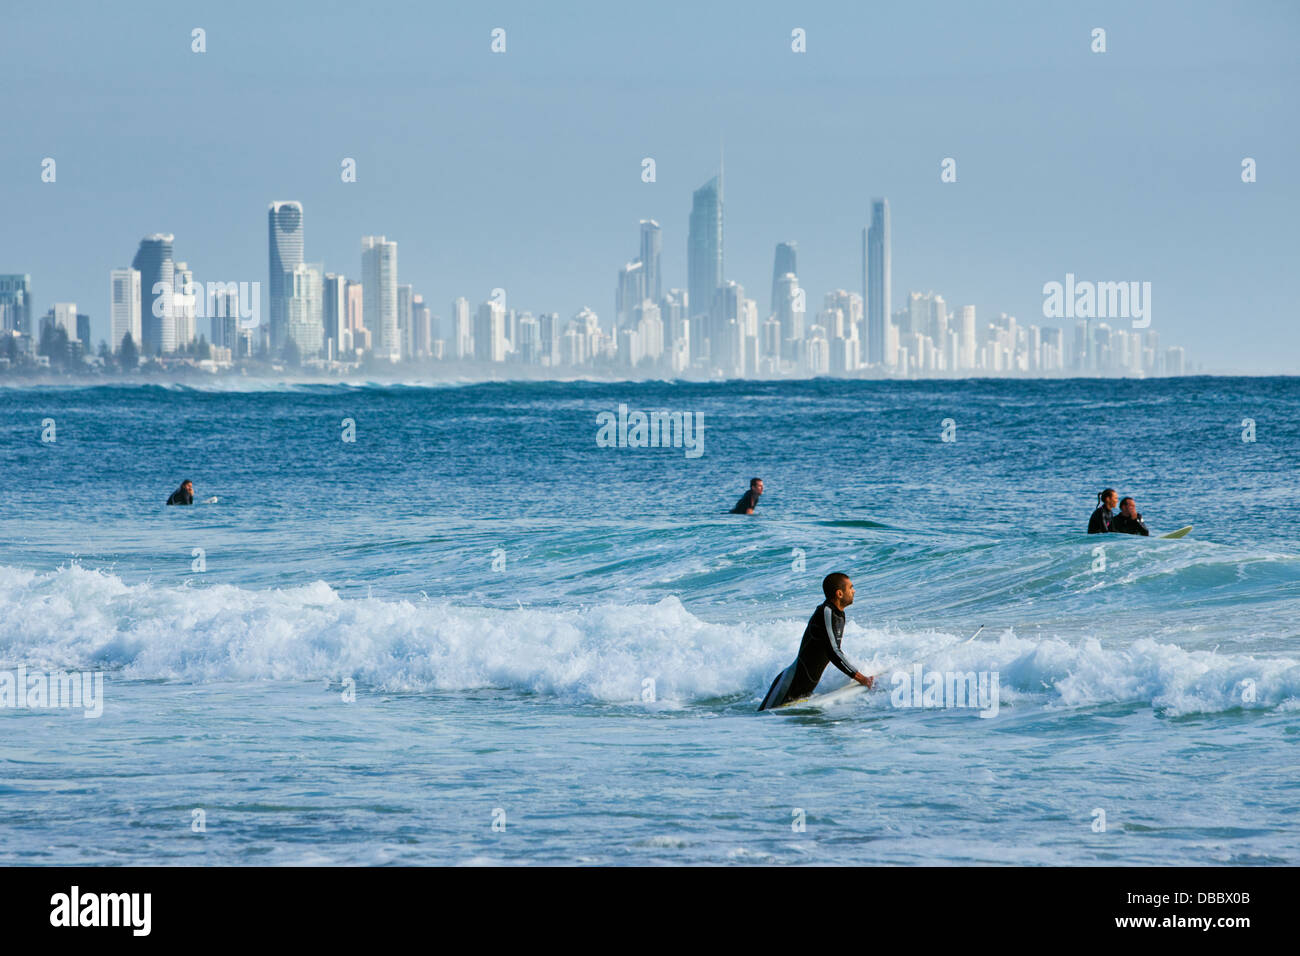 Les surfeurs en attente d'ondes avec ville en arrière-plan. Burleigh Heads, Gold Coast, Queensland, Australie Banque D'Images